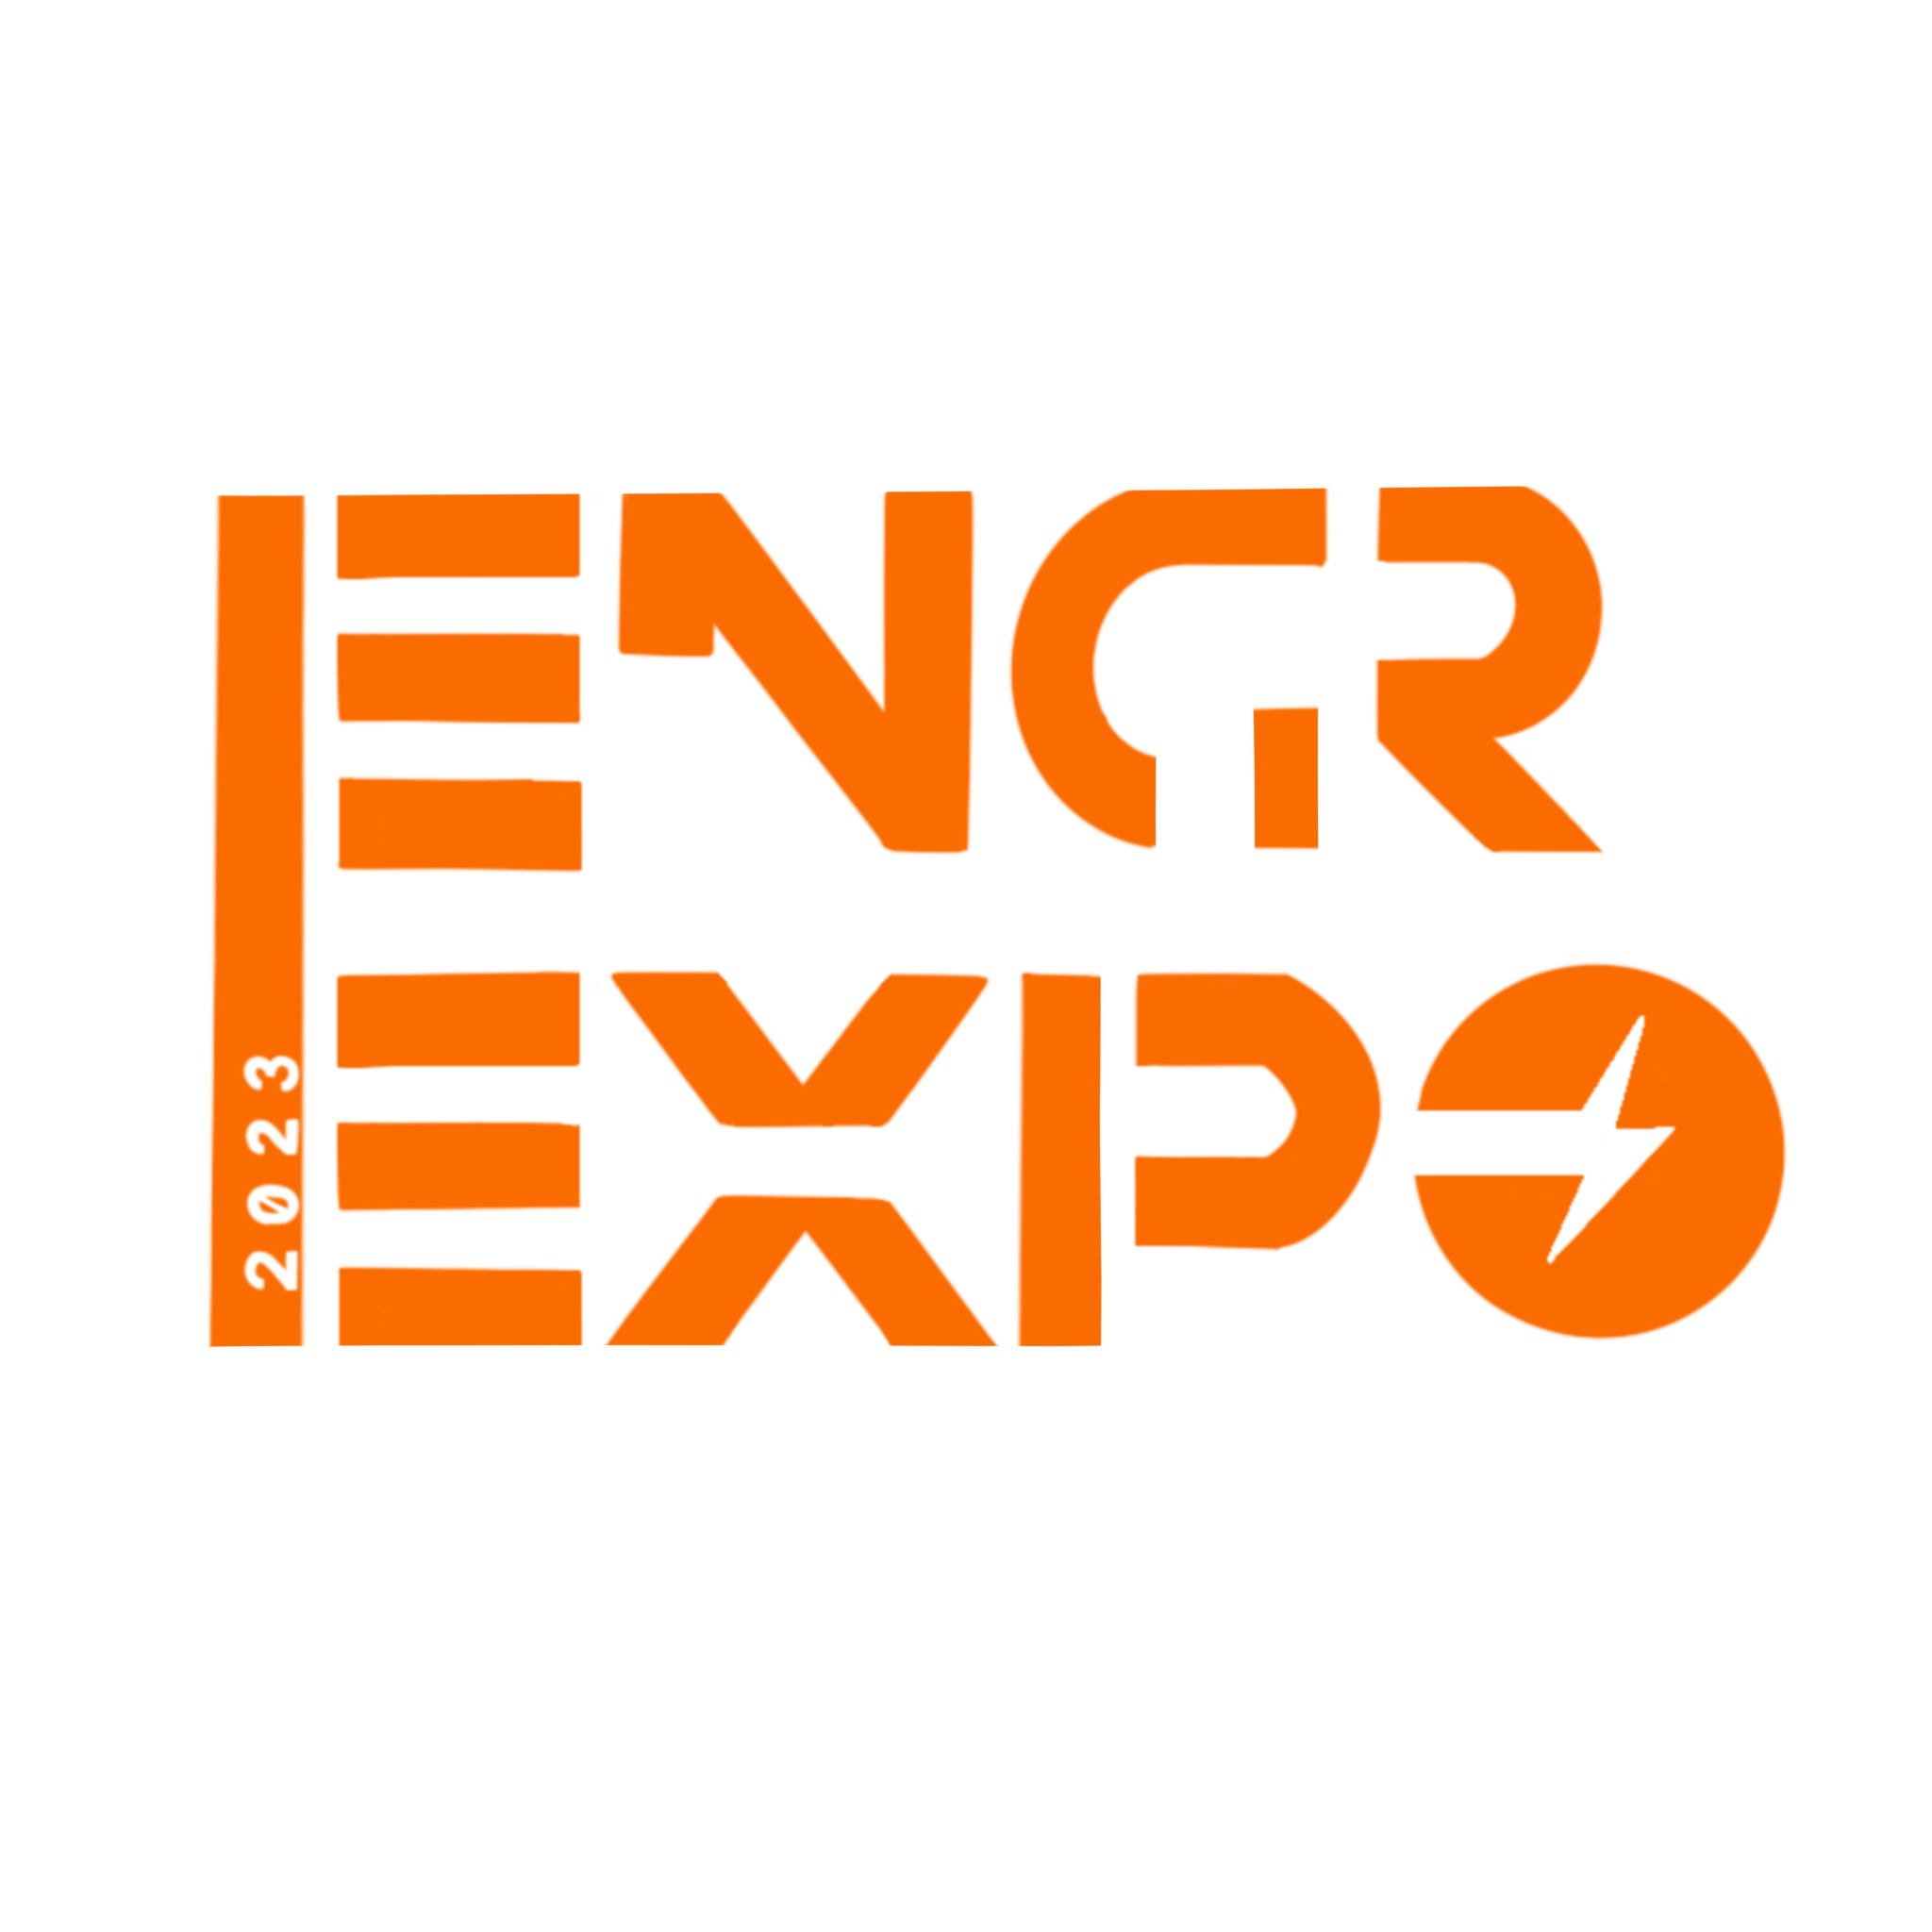 The 2021 Expo logo